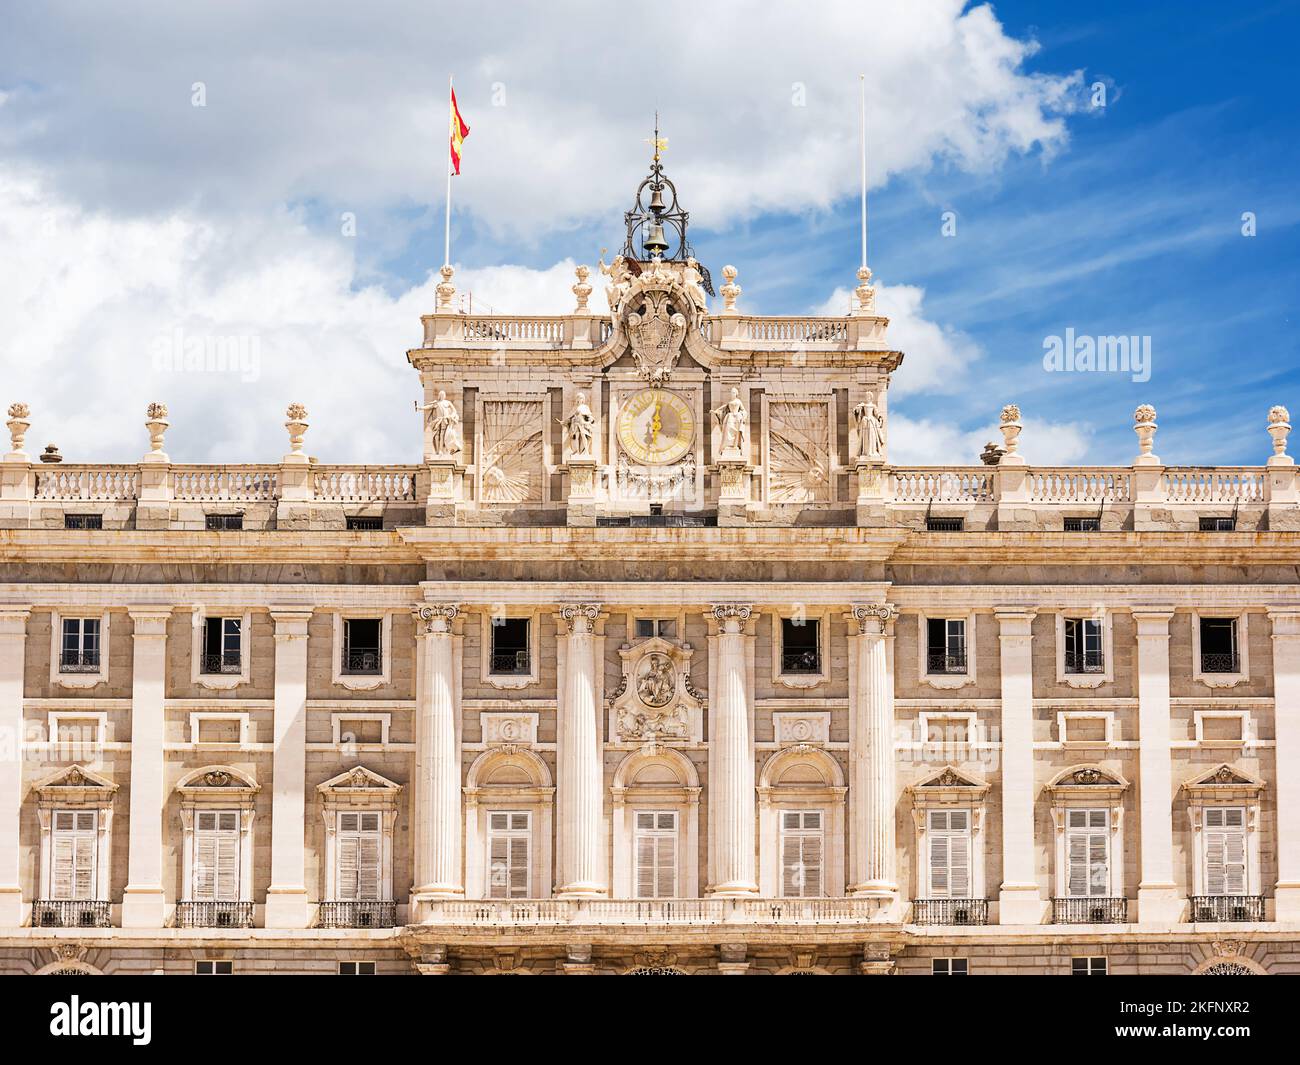 Detalle de la fachada interior del palacio del este, el palacio real de Madrid Foto de stock